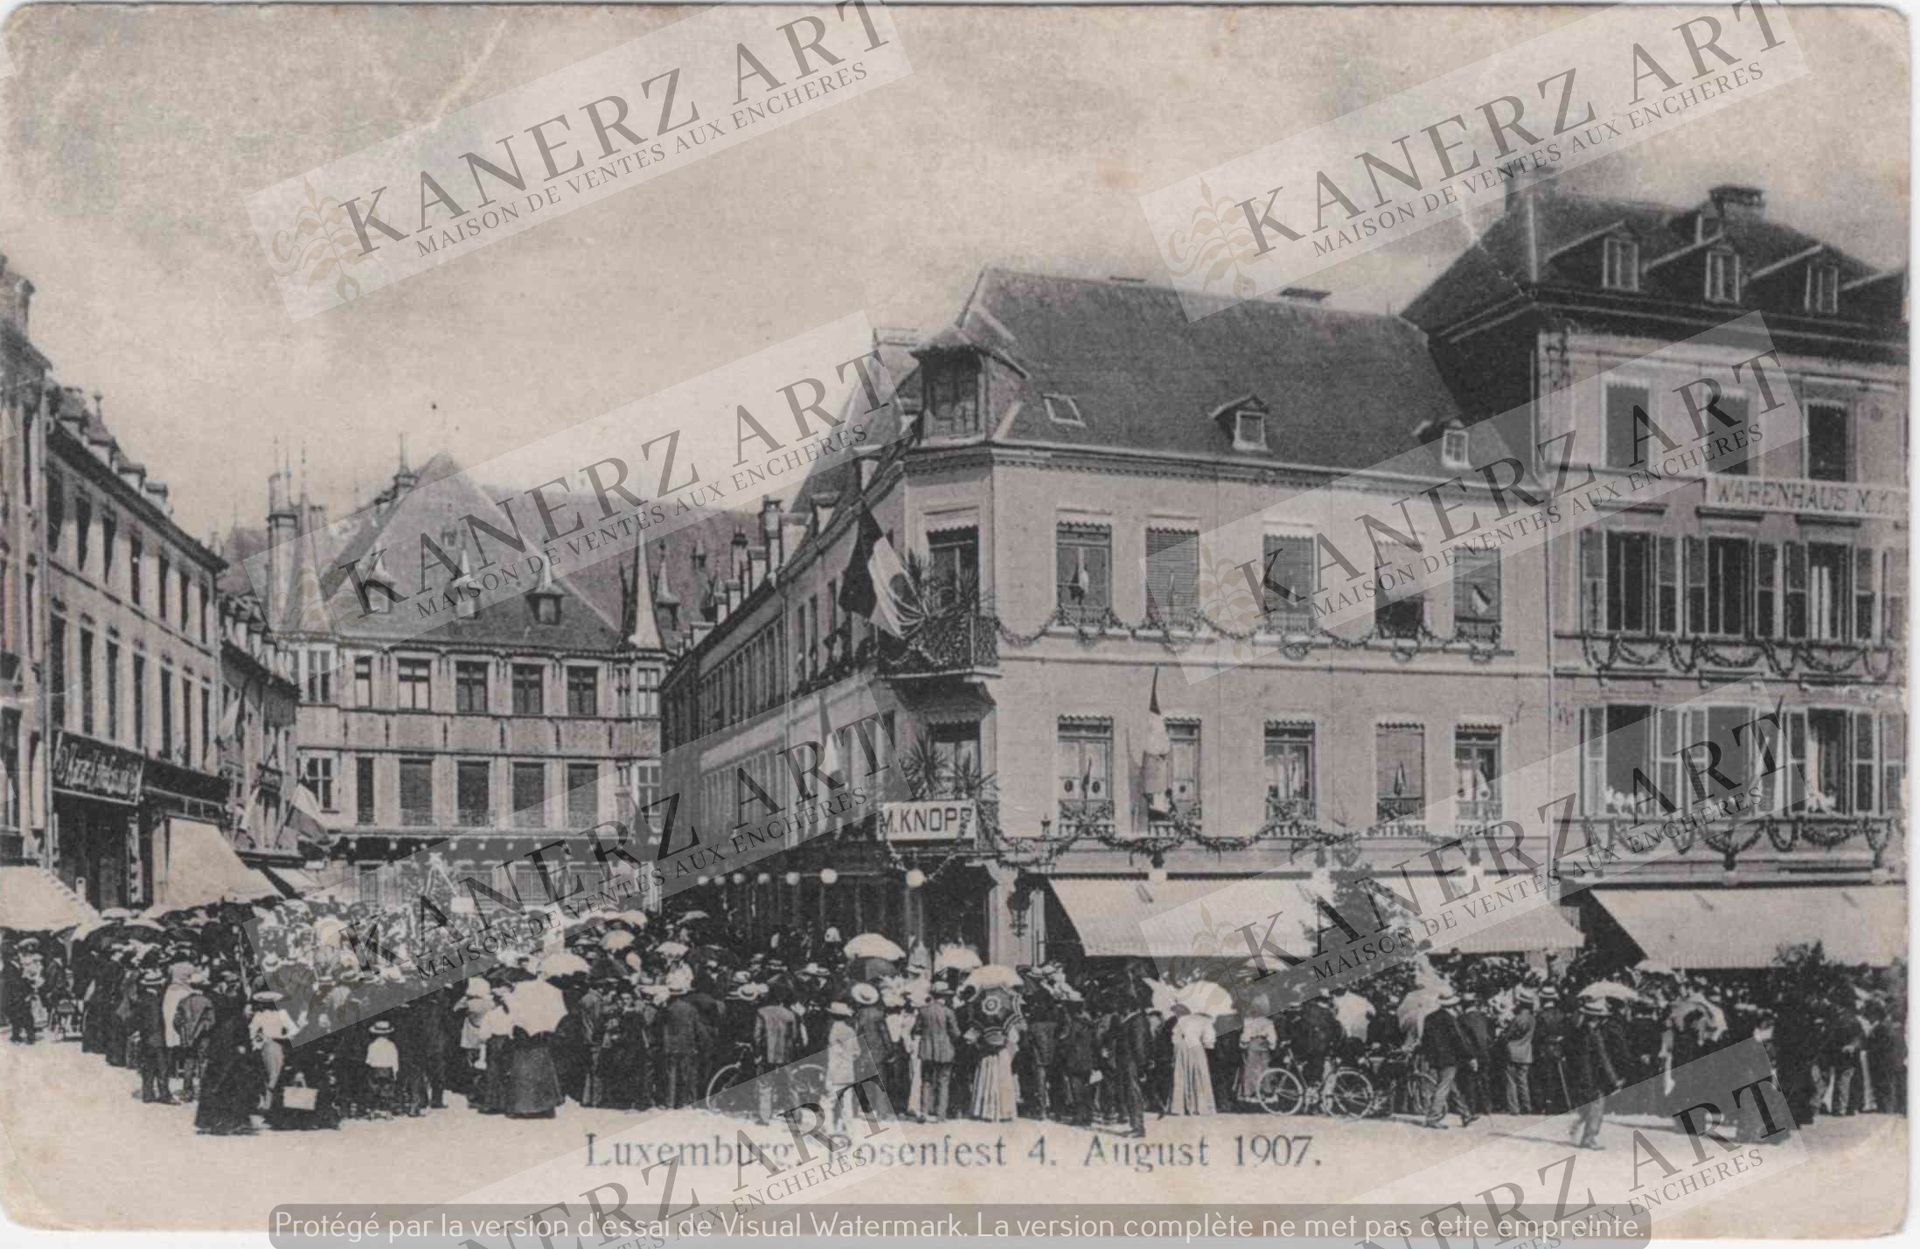 Null (OFFICIEL) 2x Carte postale Rosenfest à Luxembourg le 4 août 1907